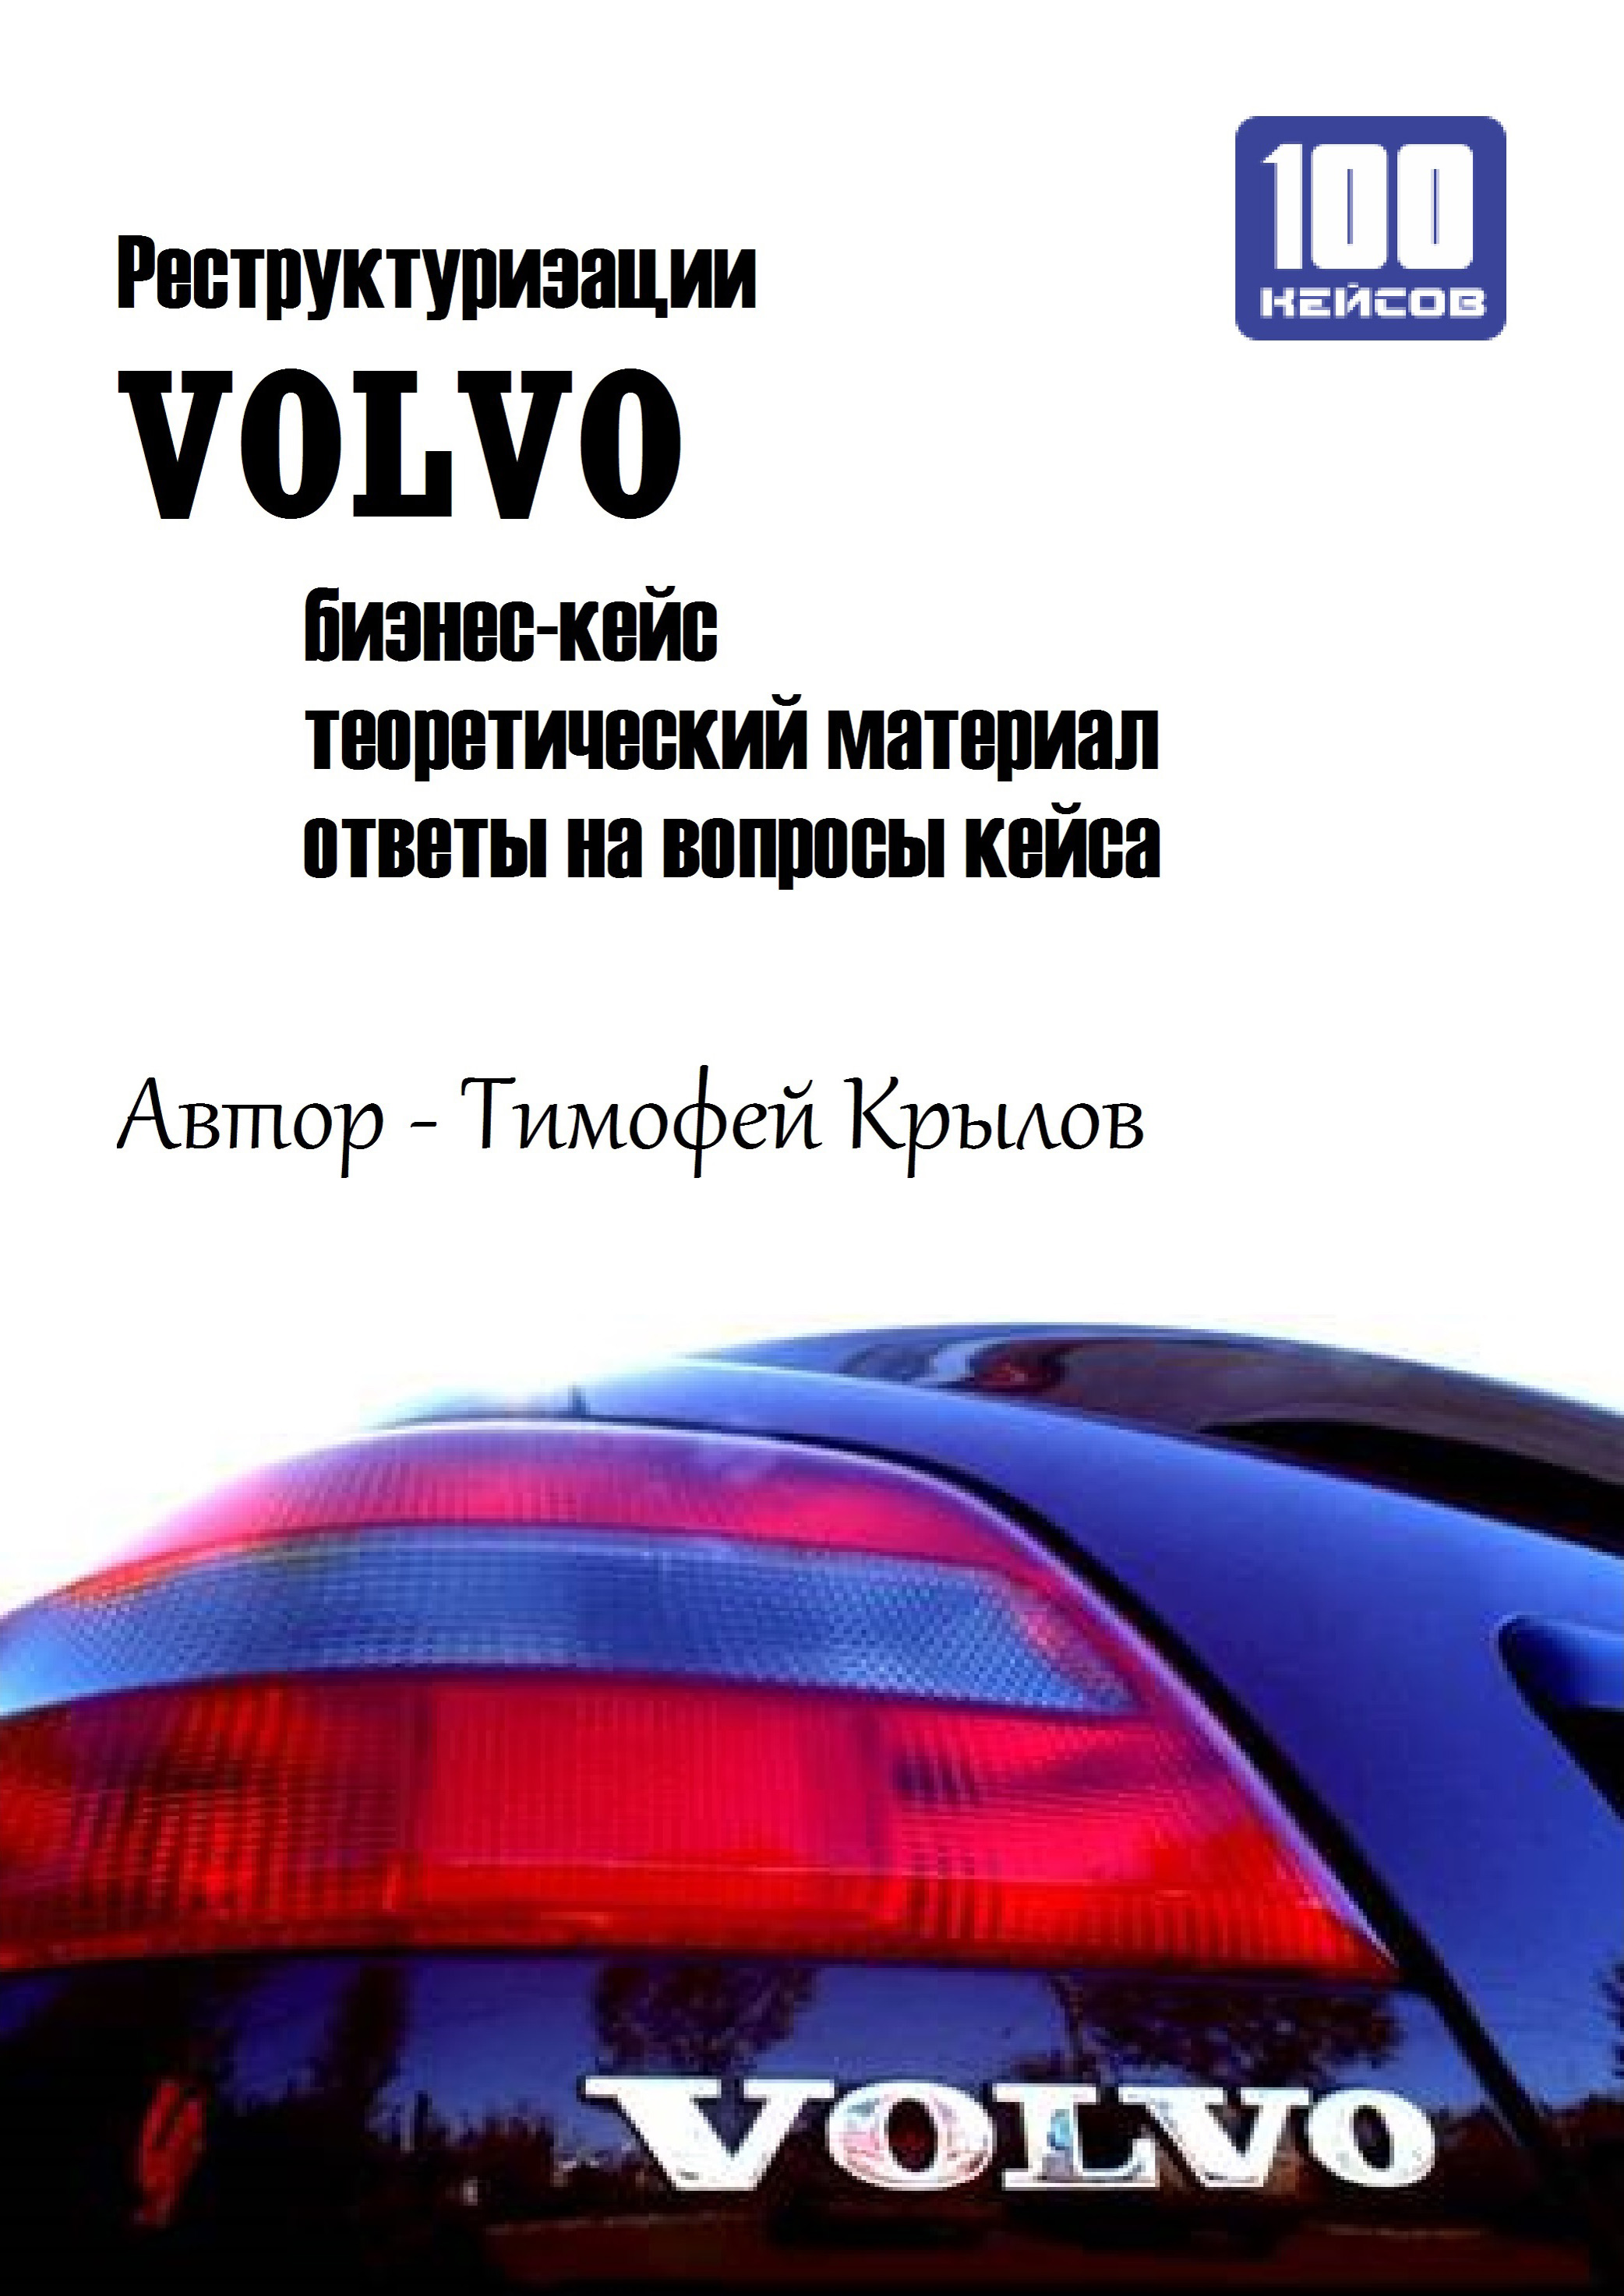 Книга  Реструктуризации VOLVO (бизнес-кейс) созданная Тимофей Крылов может относится к жанру автотранспорт, бизнес-процессы, корпоративная культура, менеджмент и кадры, просто о бизнесе. Стоимость электронной книги Реструктуризации VOLVO (бизнес-кейс) с идентификатором 6658932 составляет 54.99 руб.